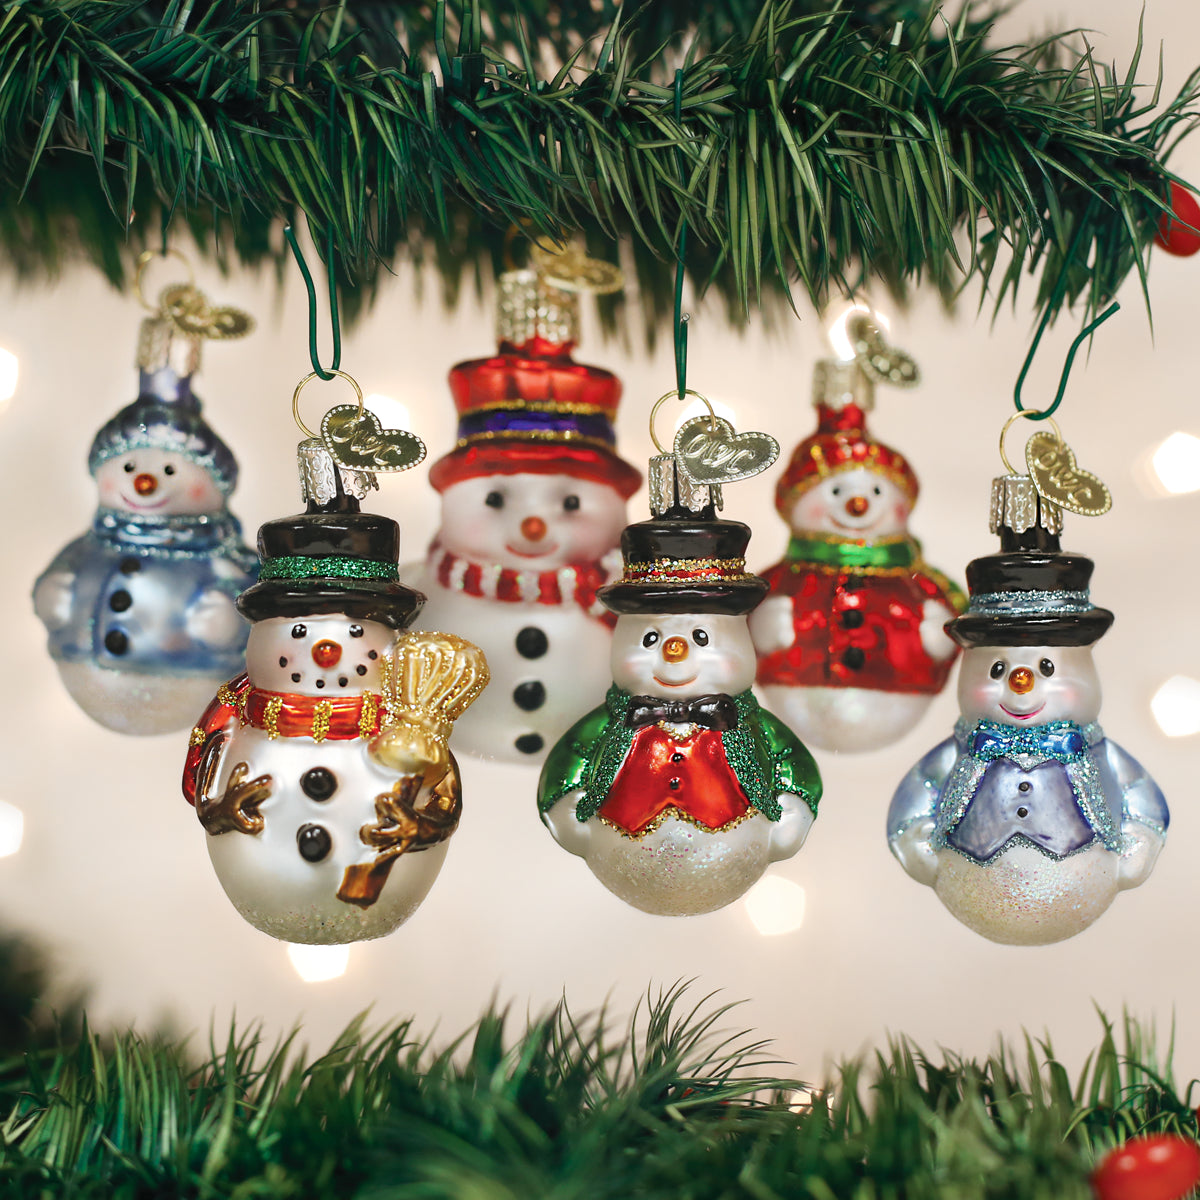 Z 21pcs Christmas Miniature Ornaments Santa Claus And Snowman